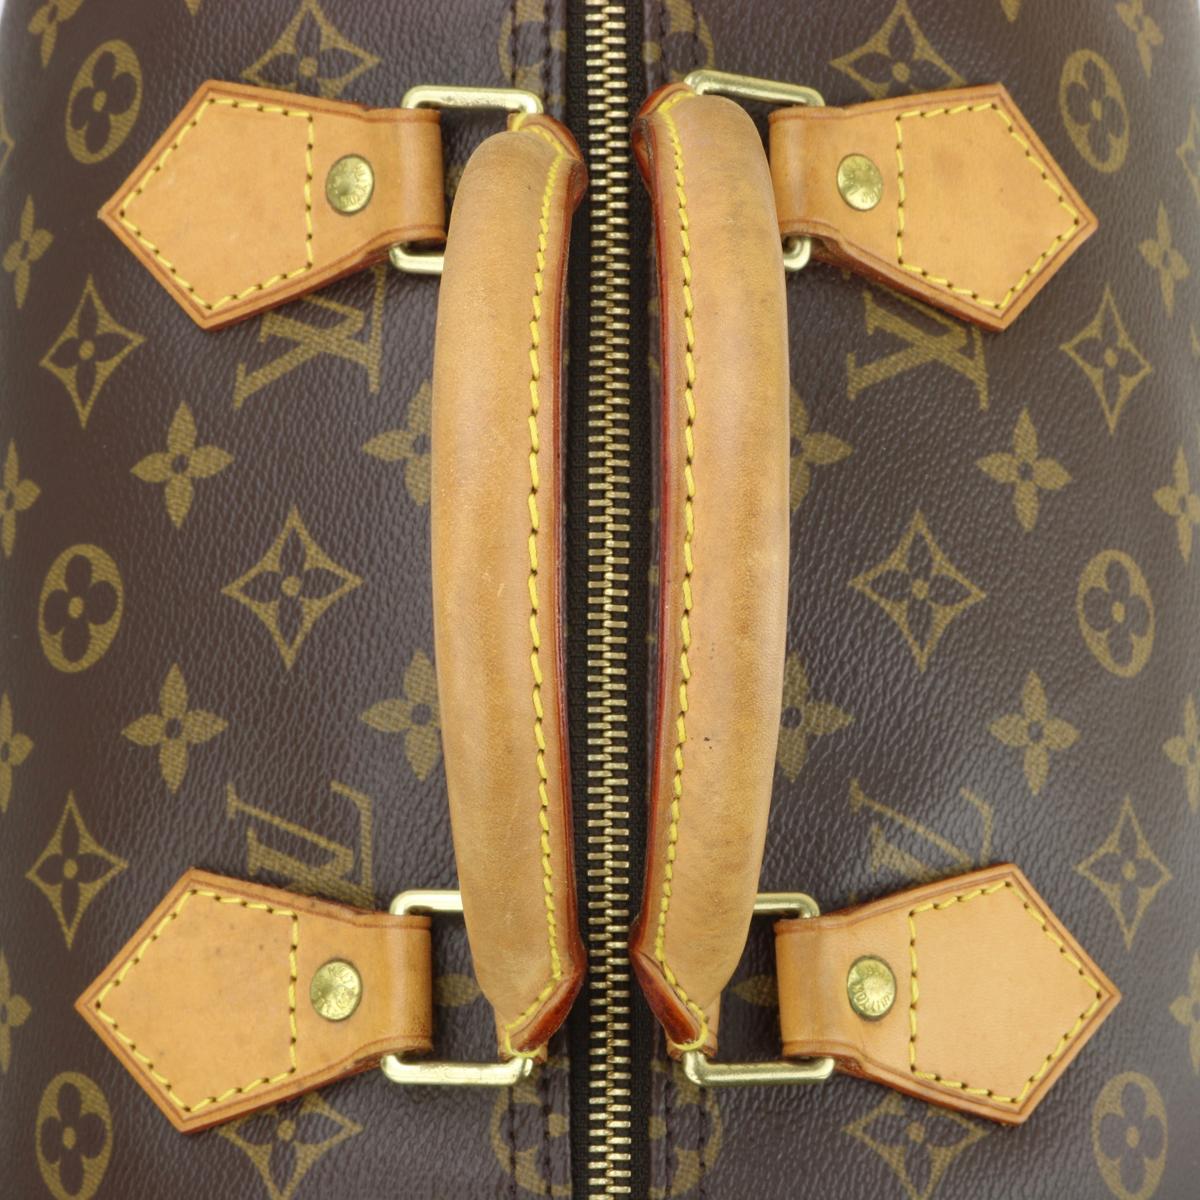 Louis Vuitton Speedy 35 Bag in Monogram 2005 9